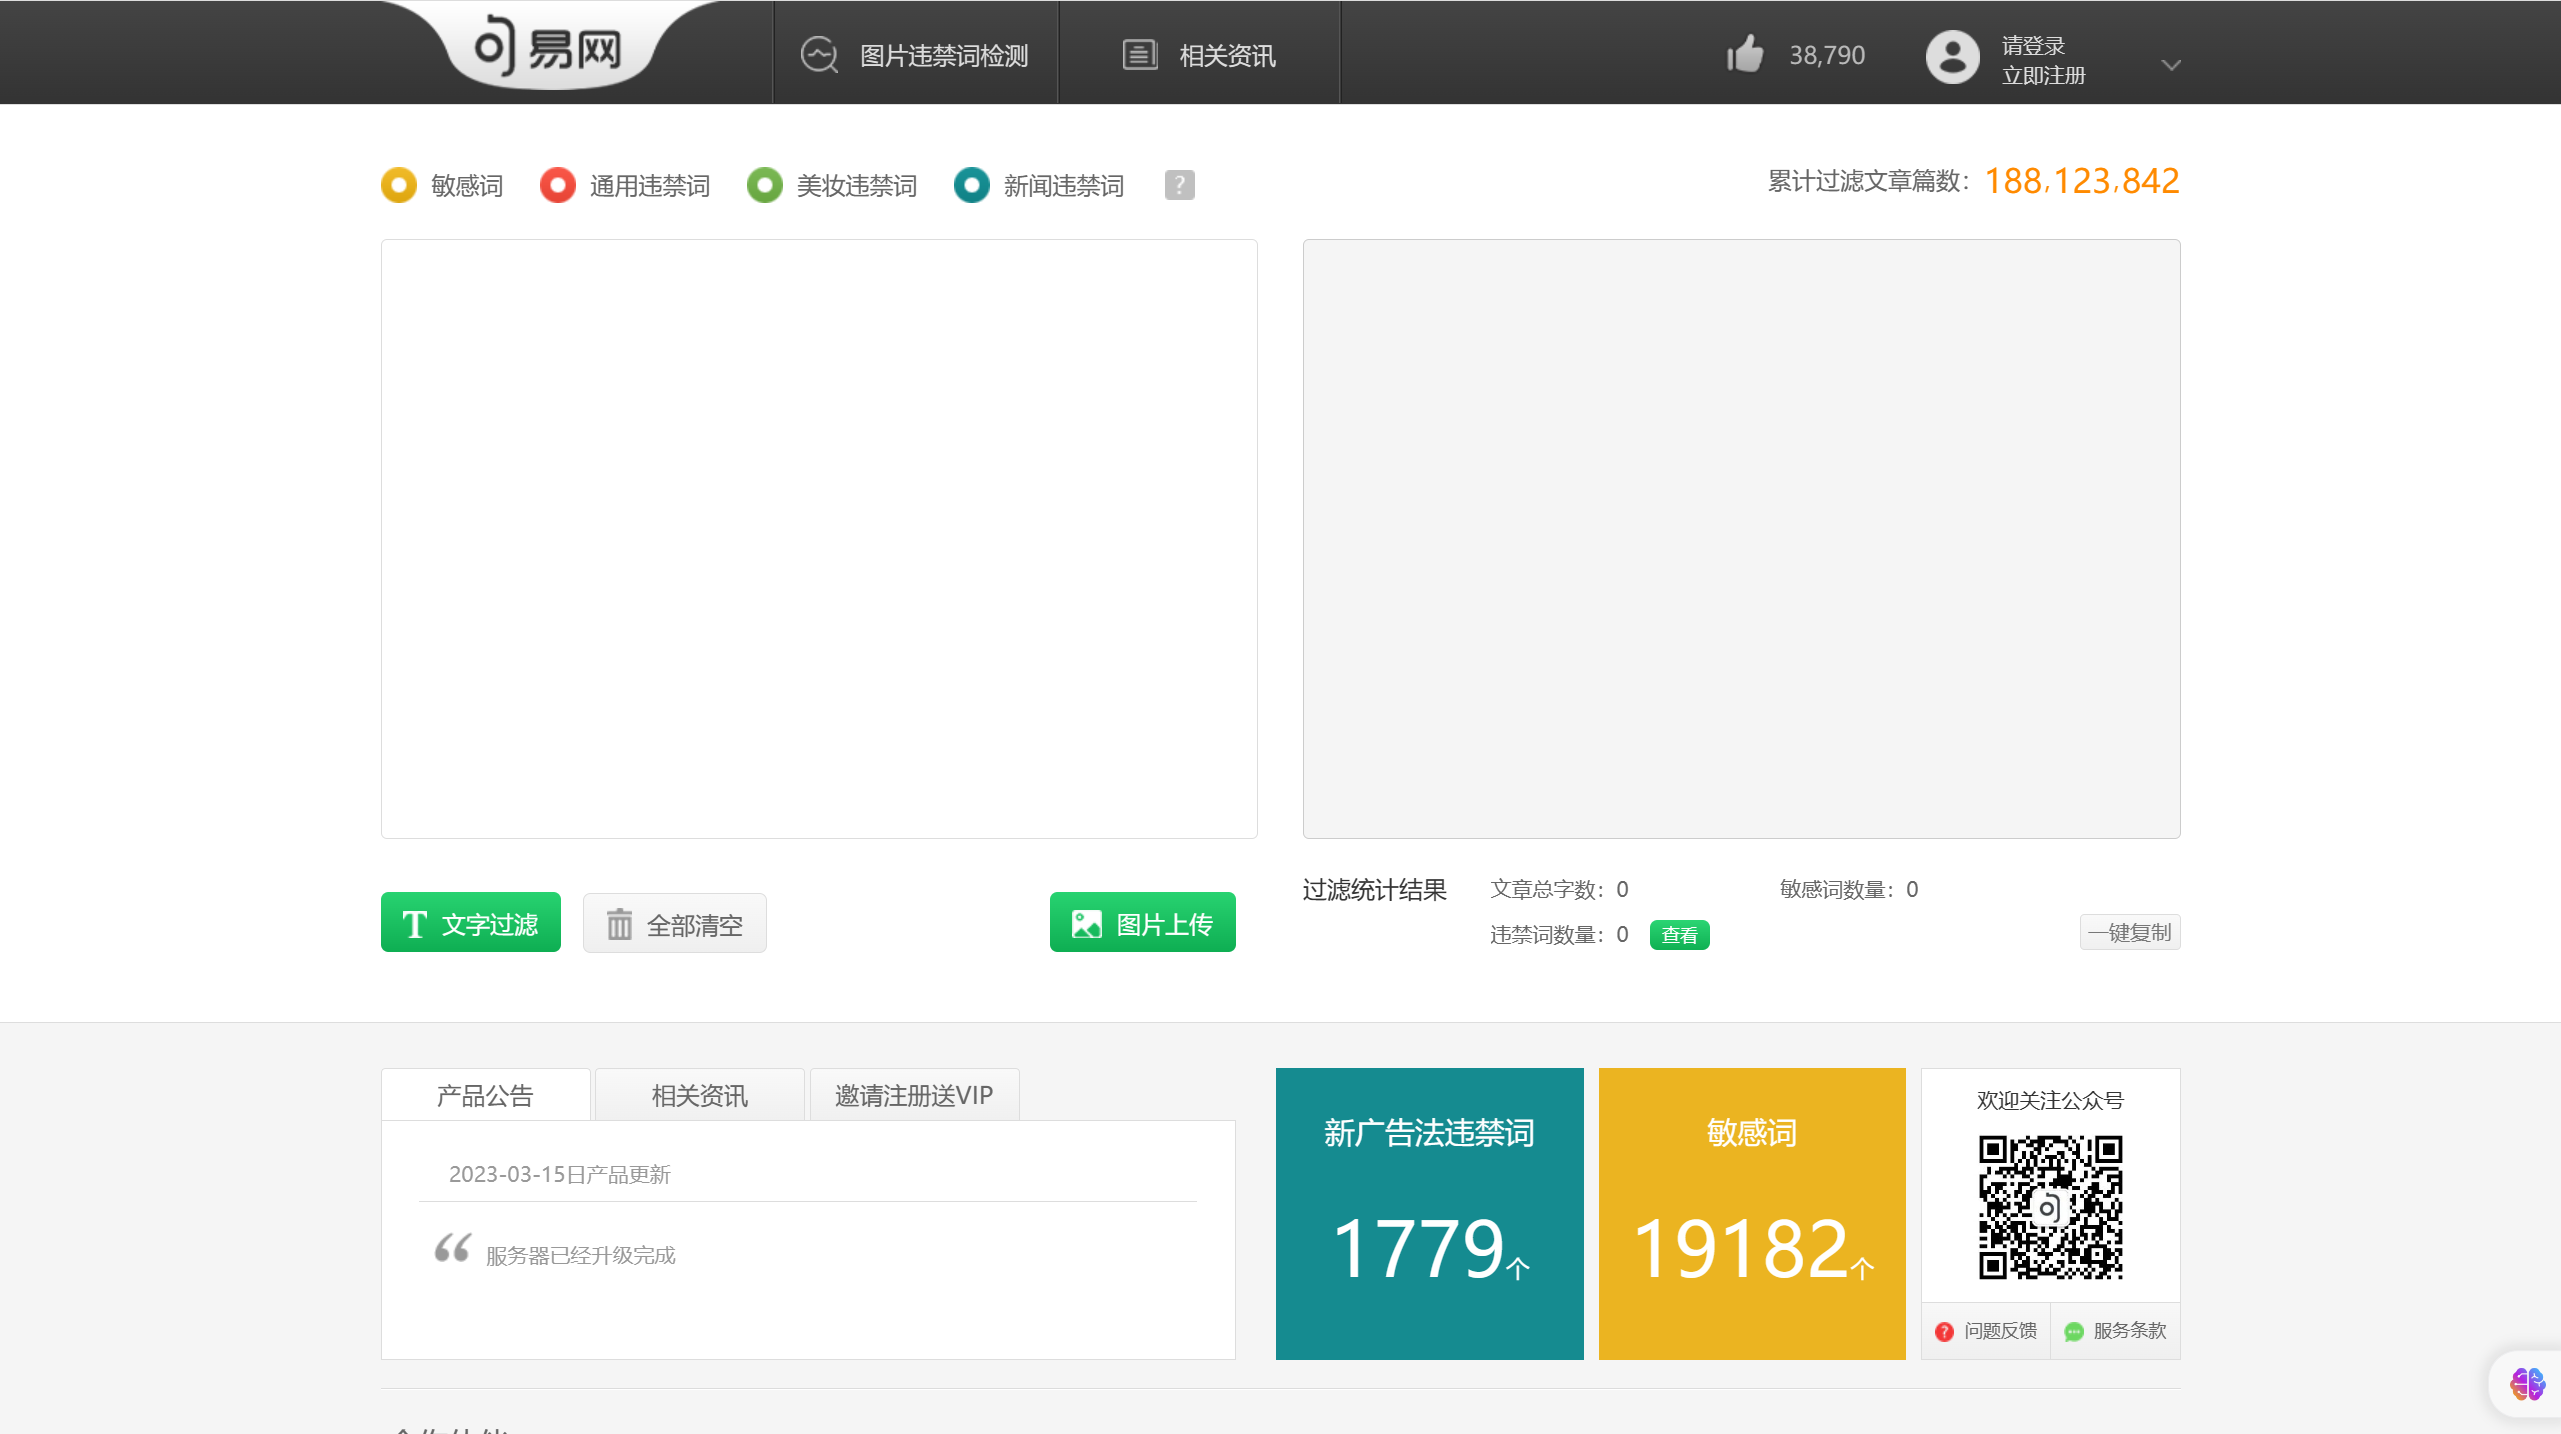 句易网 - 2023年最新广告法淘宝抖音违禁词敏感词在线查询检测工具 - www.ju1.cn.png